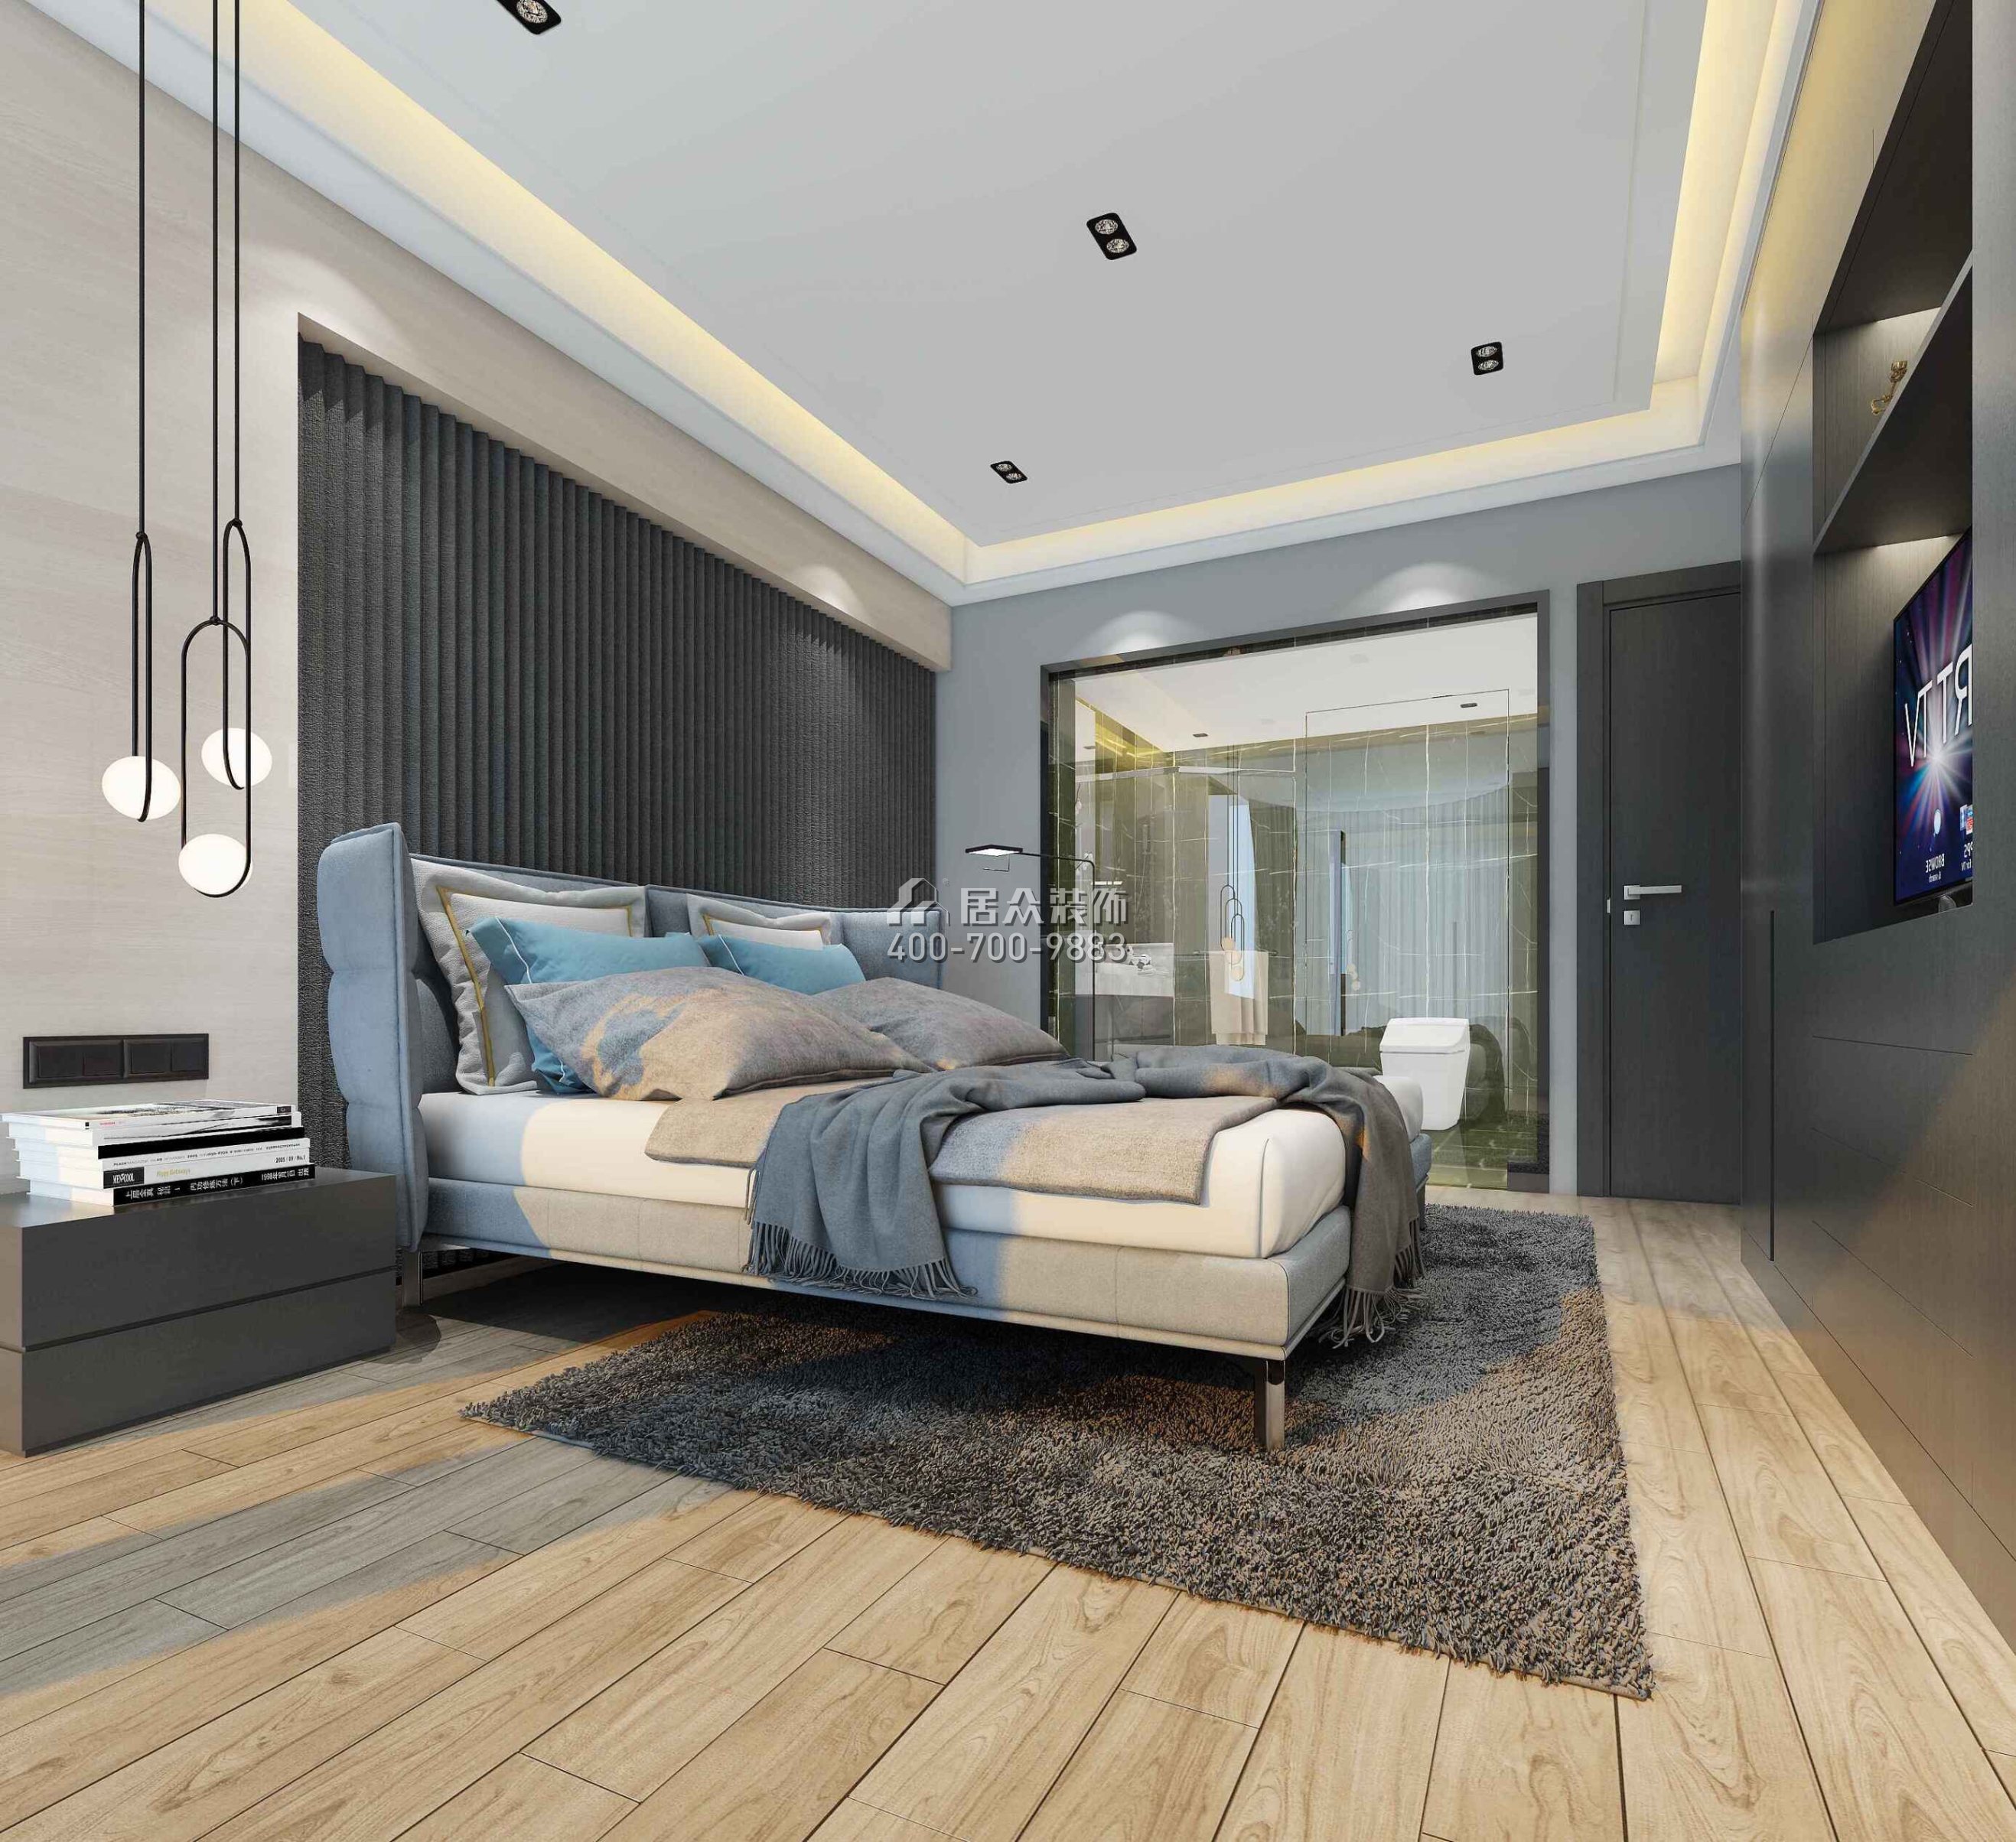 合生·滨海城160平方米现代简约风格平层户型卧室装修效果图